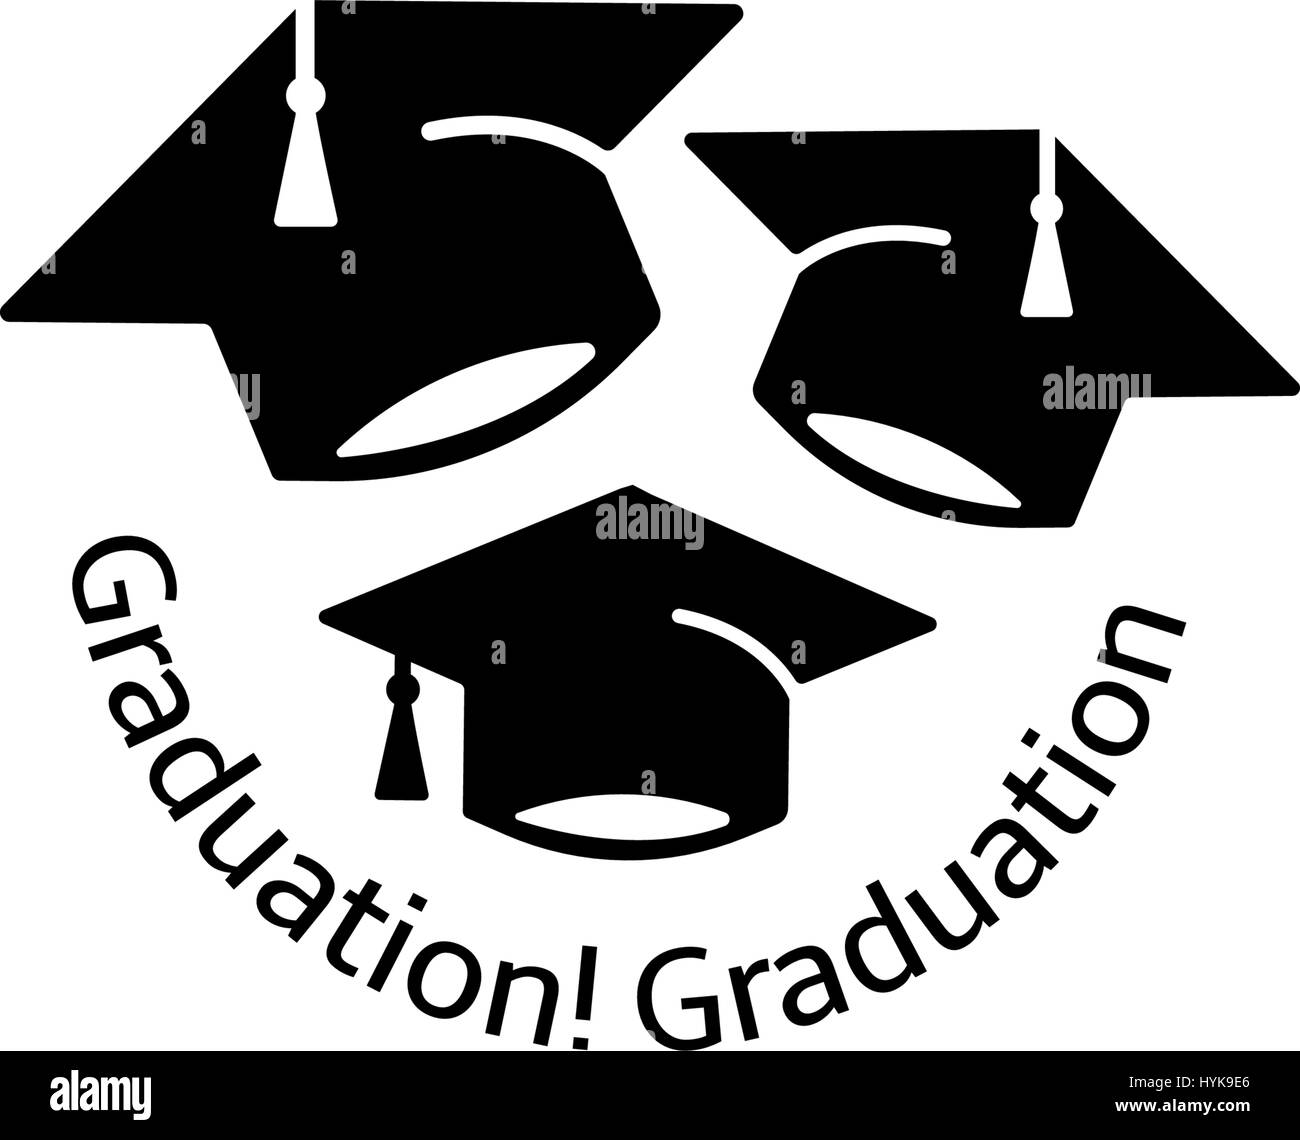 Isolato in bianco e nero e a colori bianco tre cappelli di laurea logo, gli studenti di laurea logotipo uniforme, elemento di istruzione illustrazione vettoriale Illustrazione Vettoriale